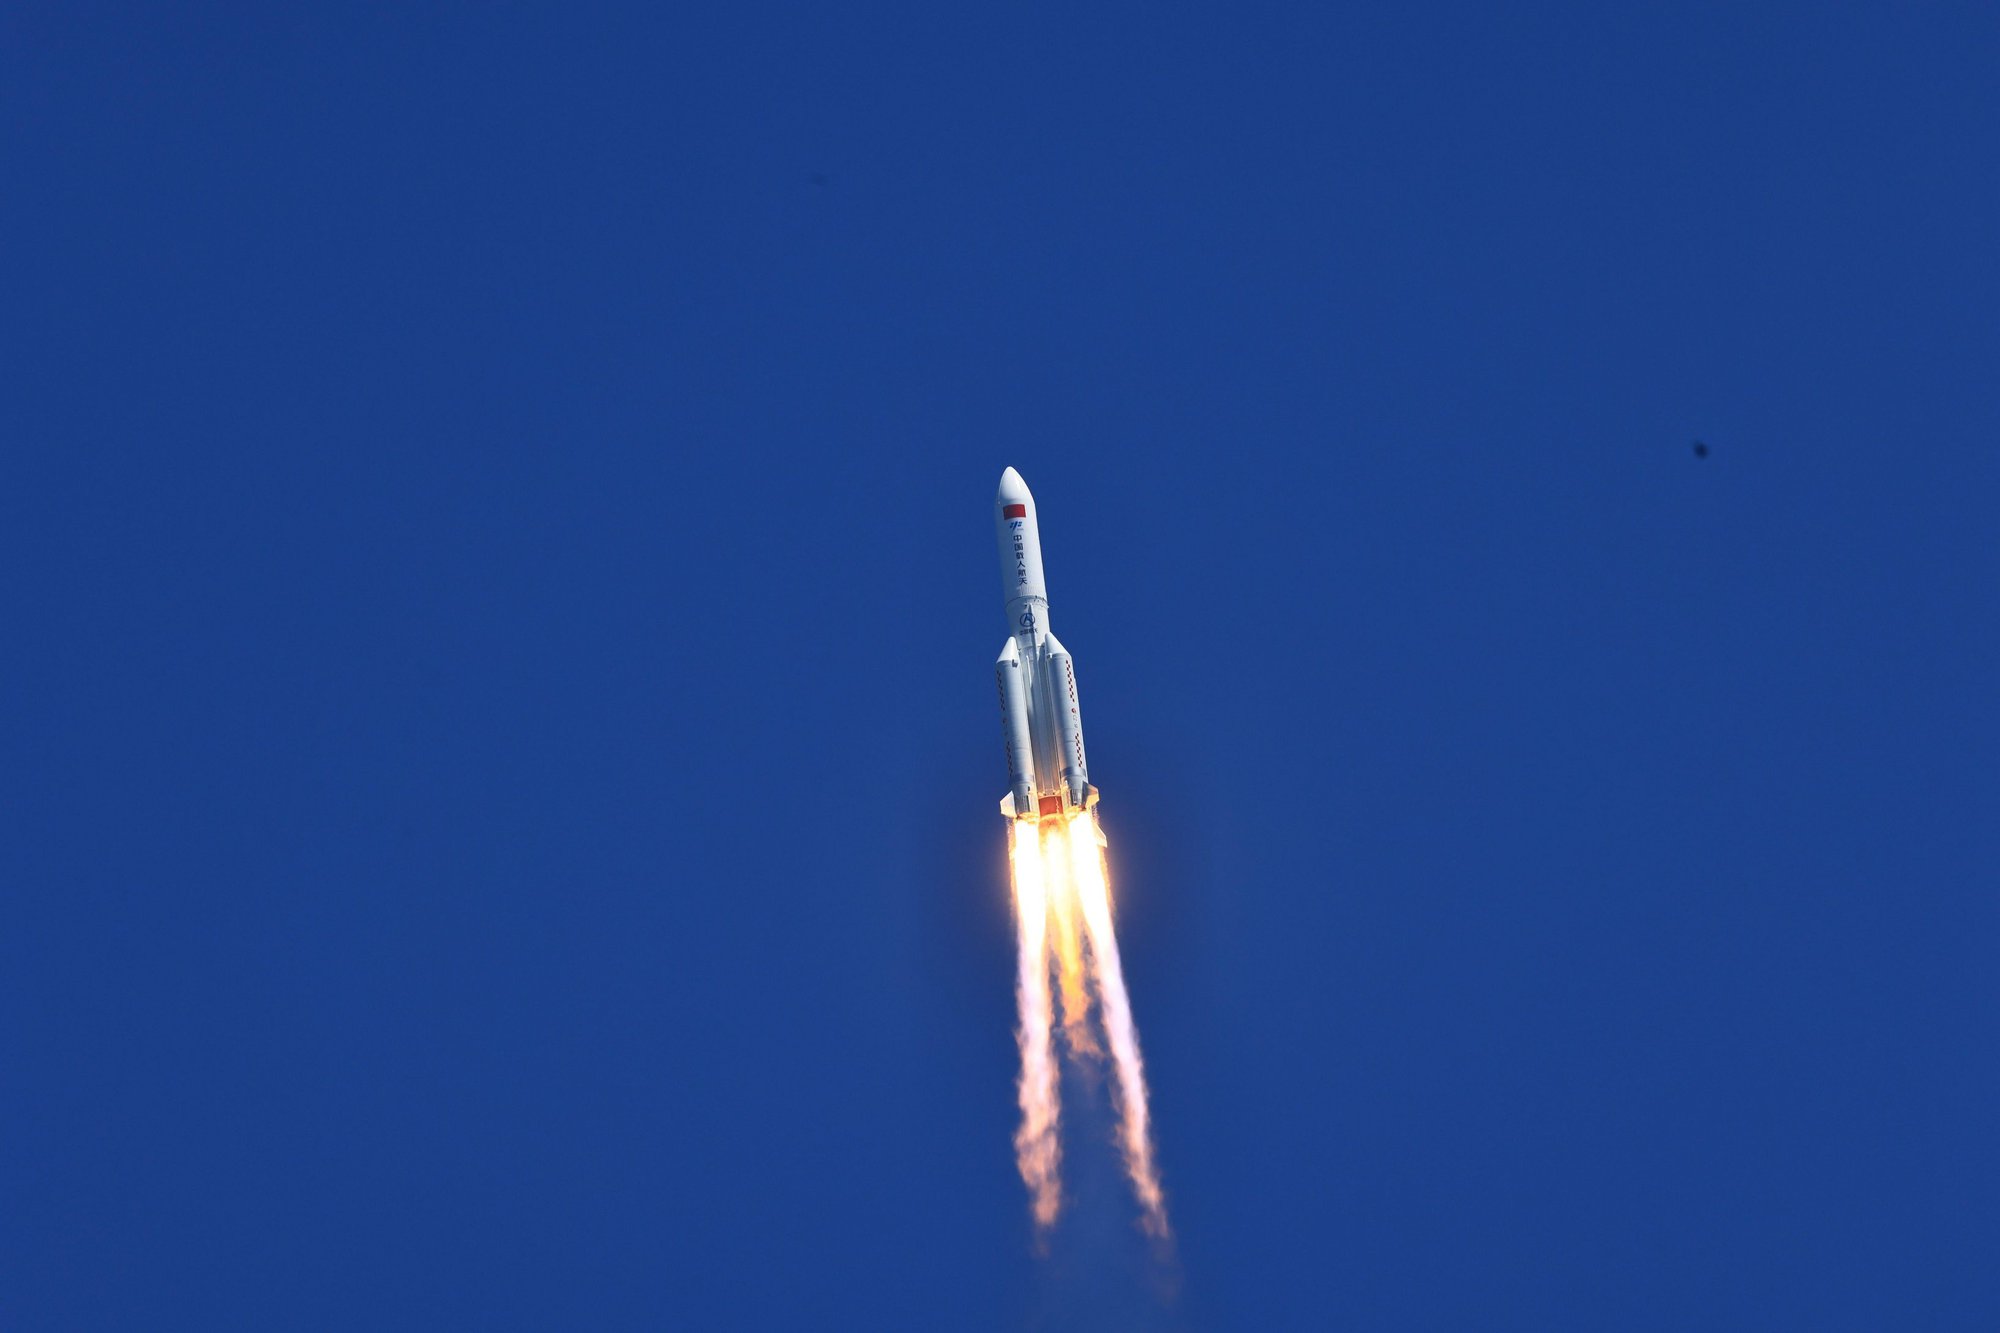 Trung Quốc tuyên bố tạo ra đột phá trong ngành hàng không vũ trụ với tên lửa có thể hạ cánh thẳng đứng như SpaceX - Ảnh 4.